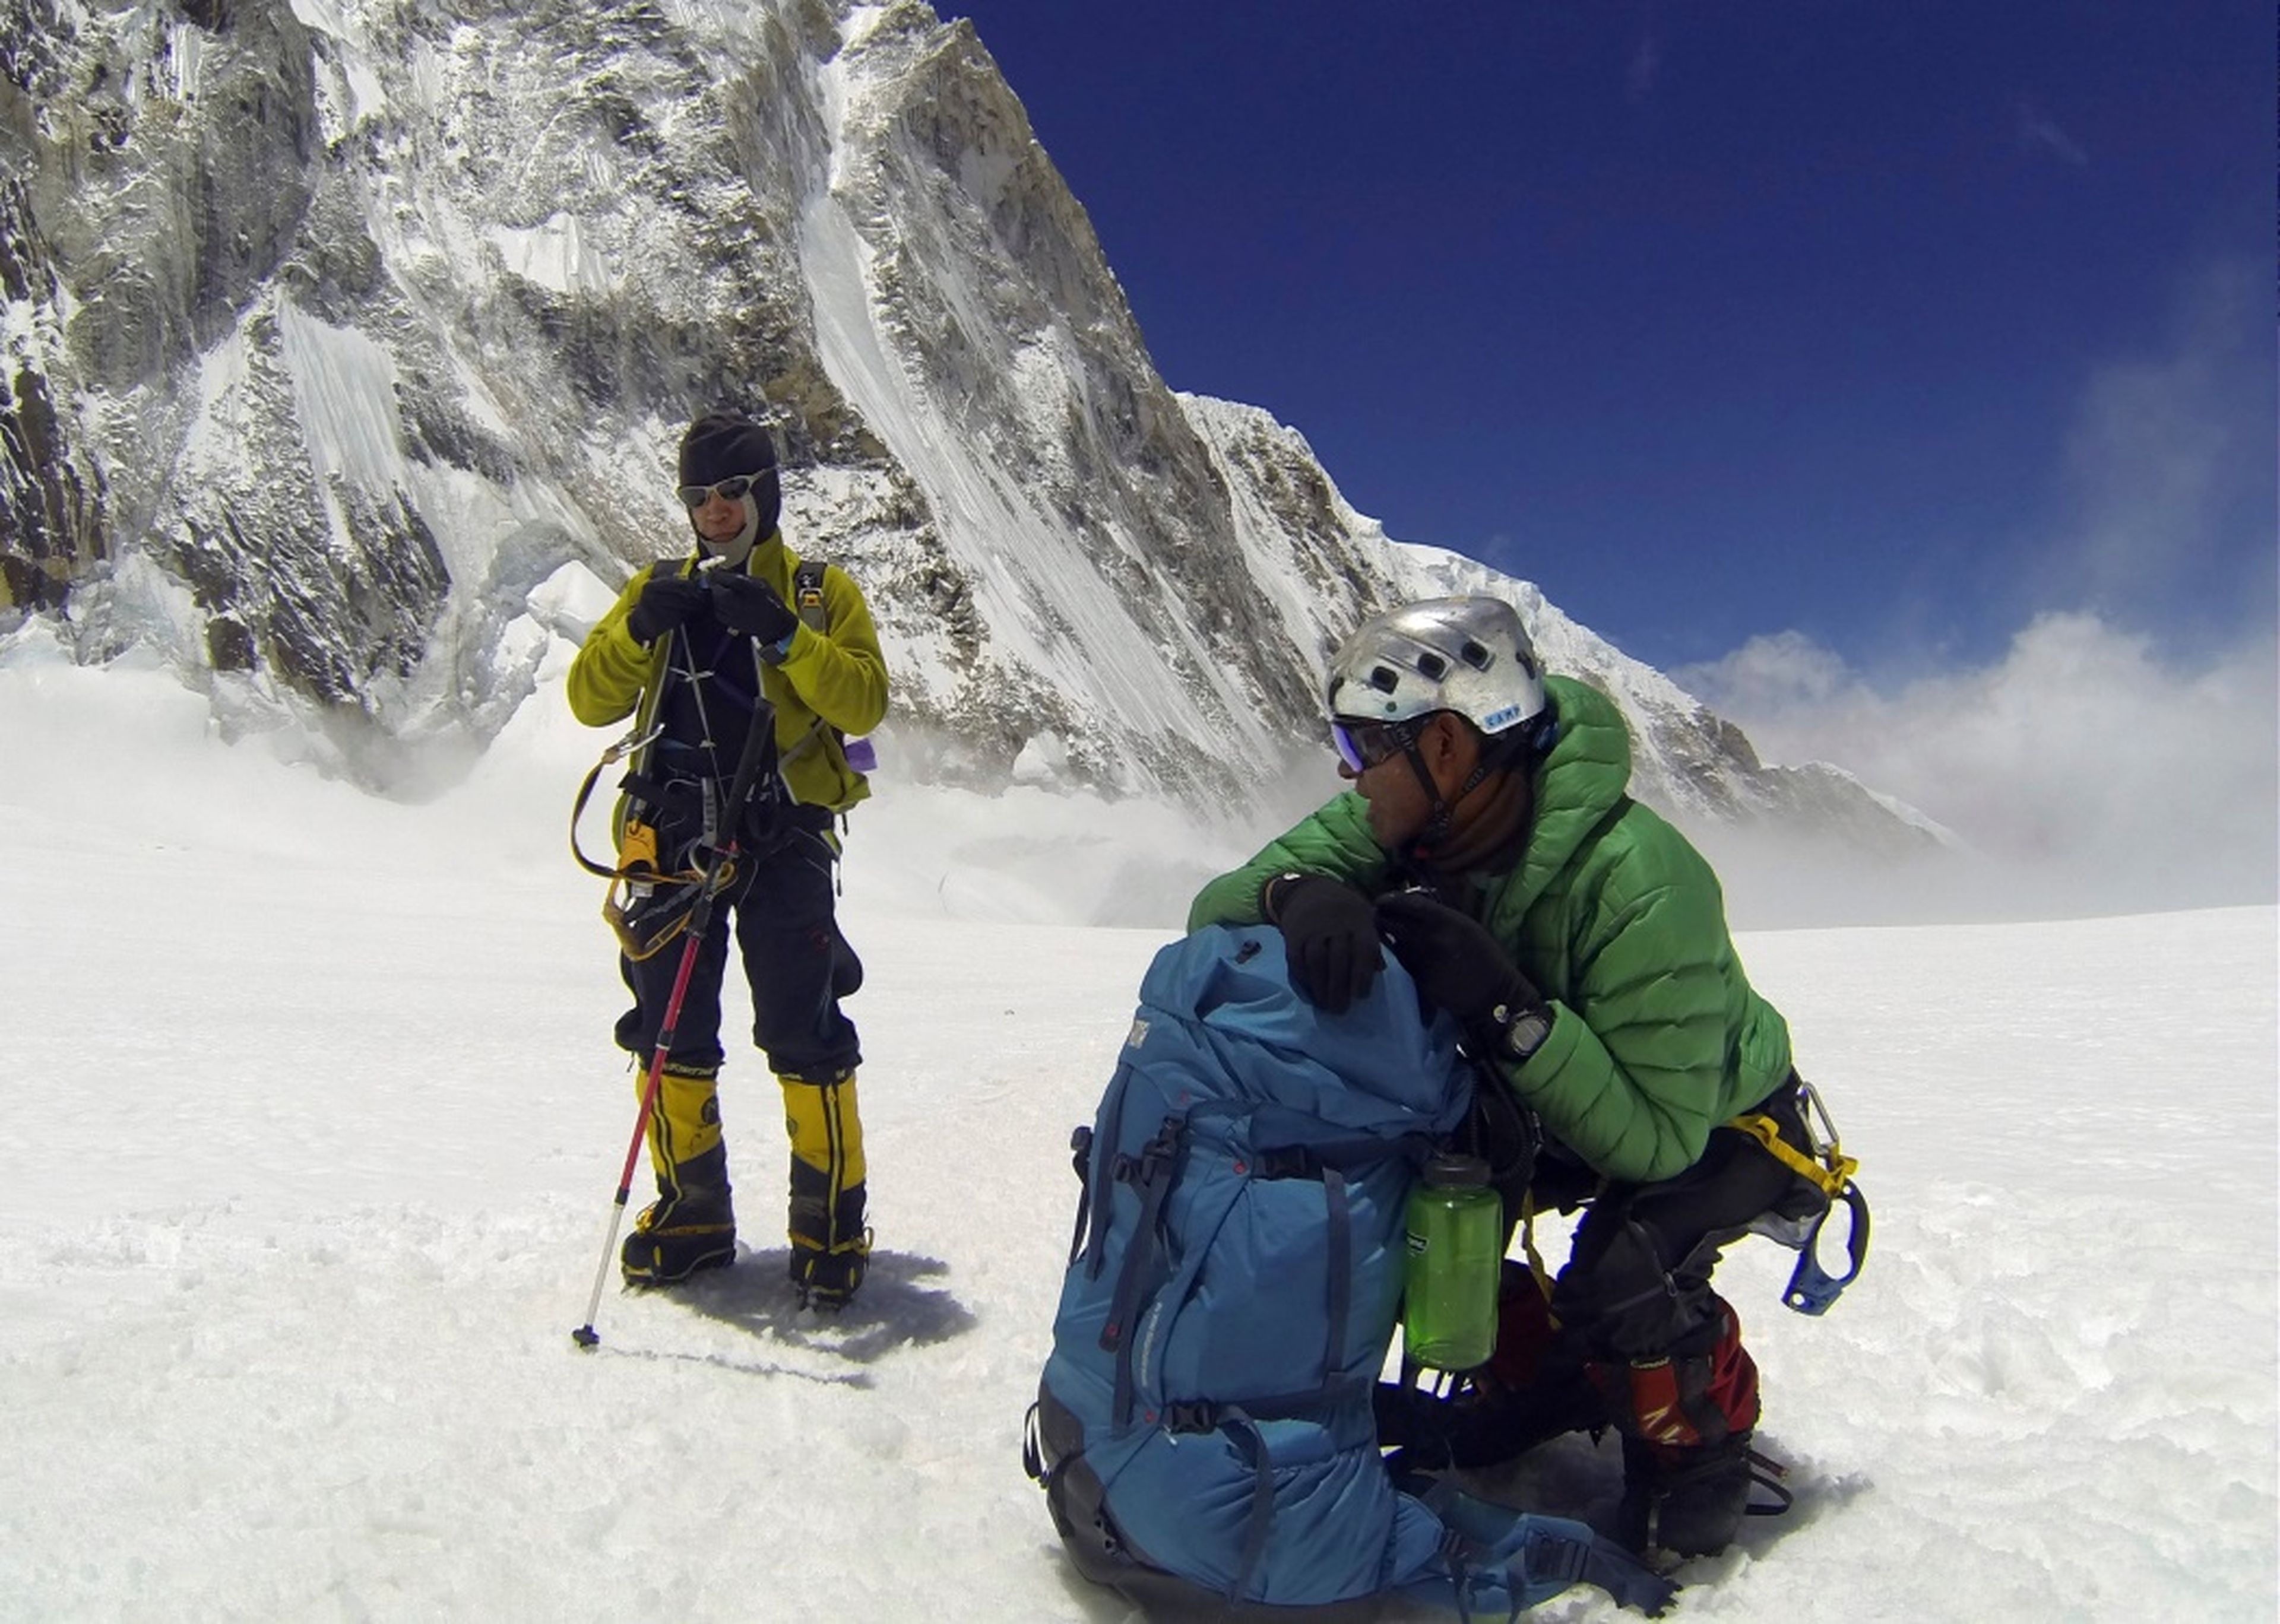 Sherpas nepalís descansan en su subida al Everest.